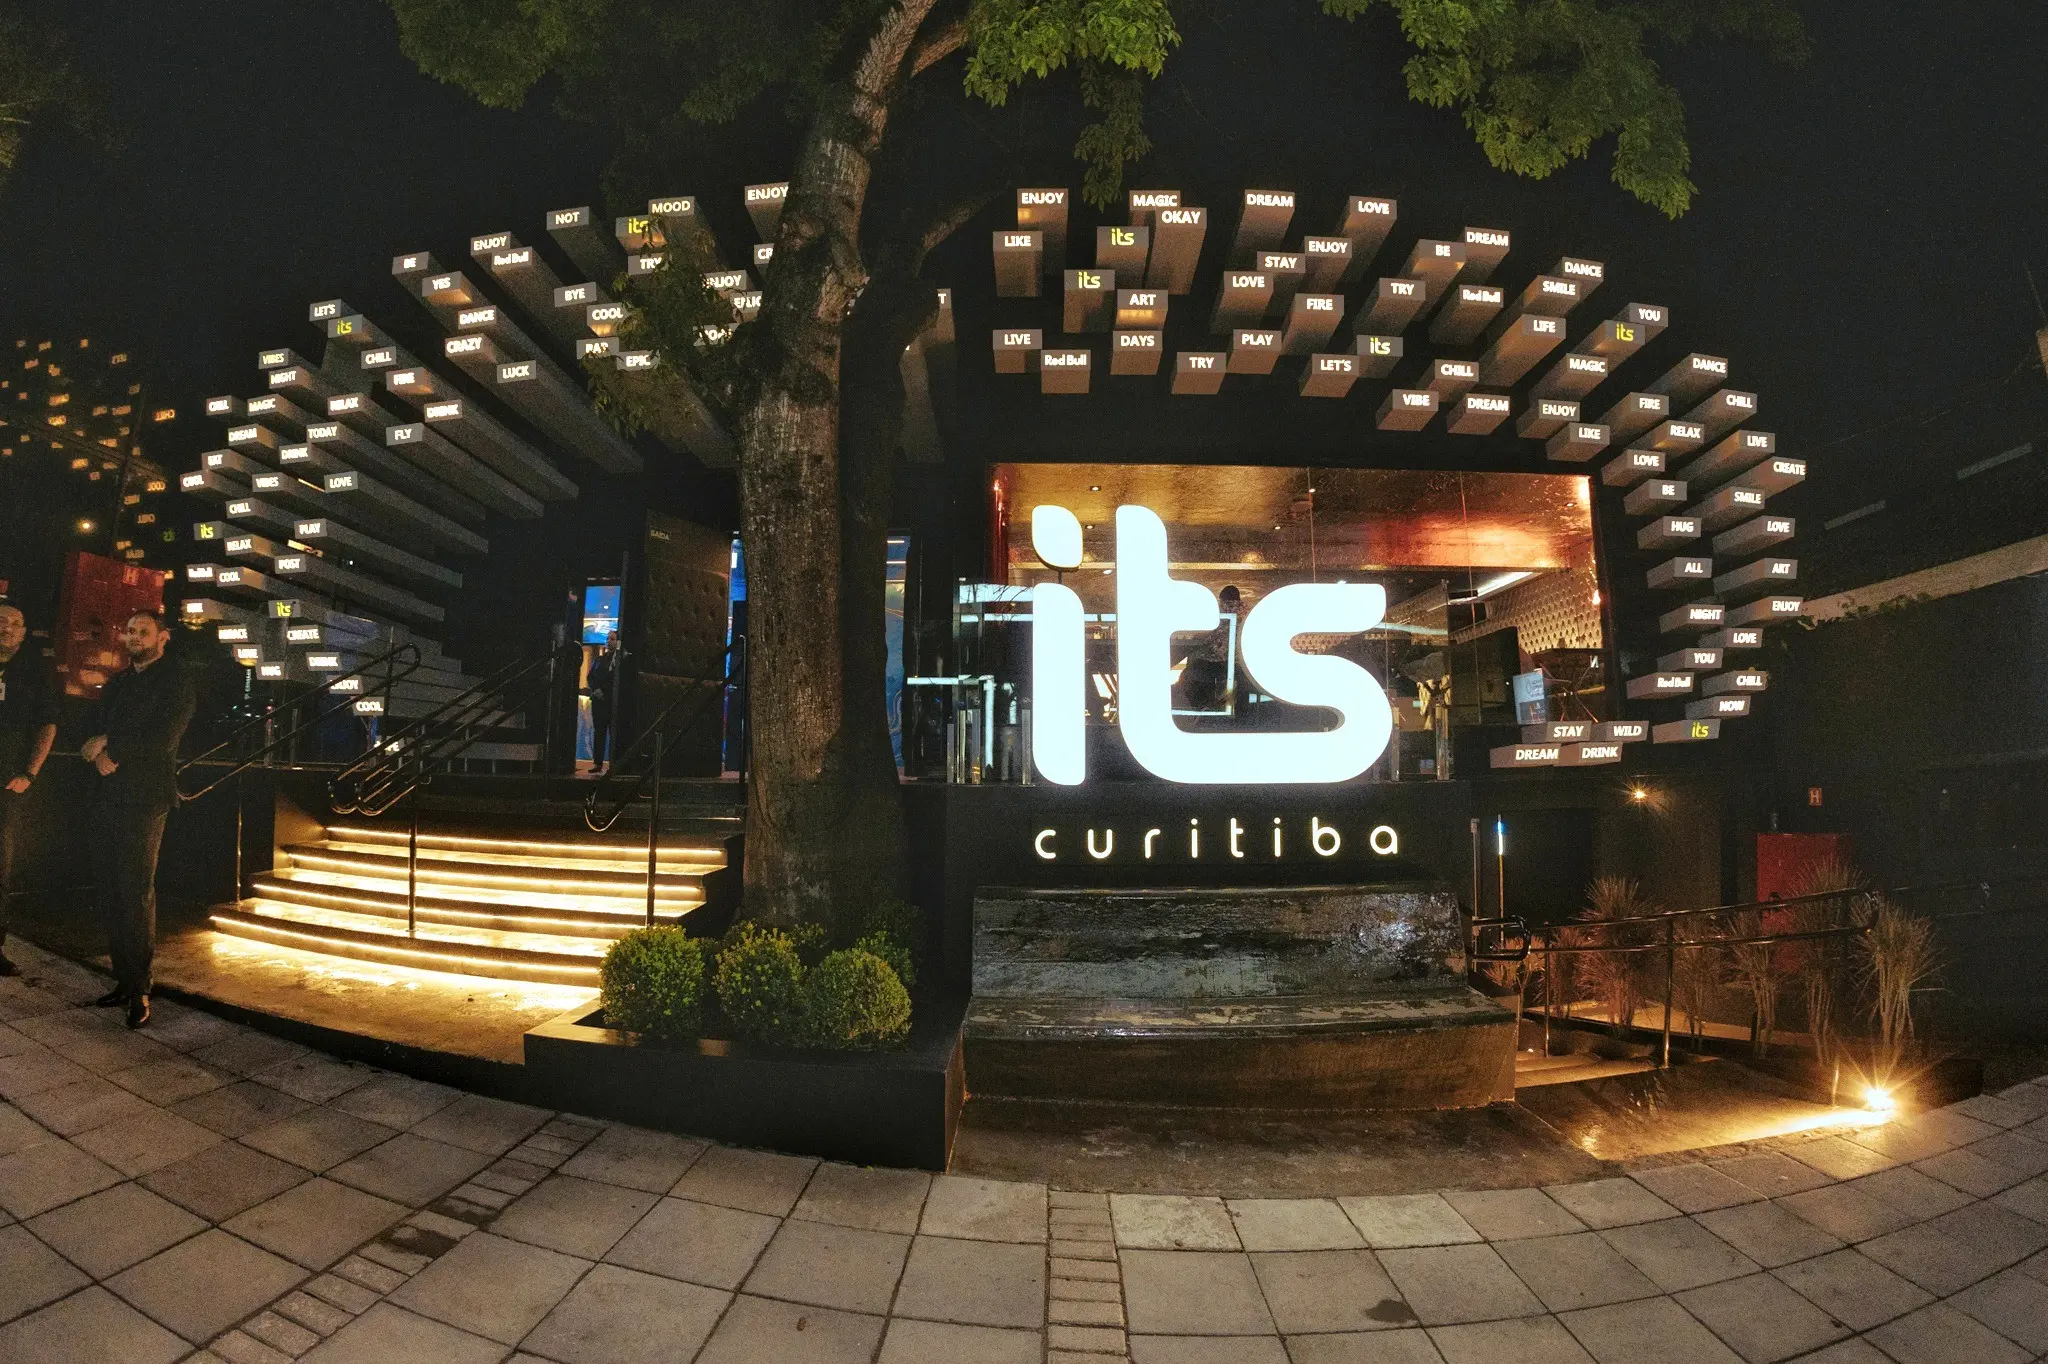 Música, gastronomia e conforto. Conheça a mais nova balada de Curitiba